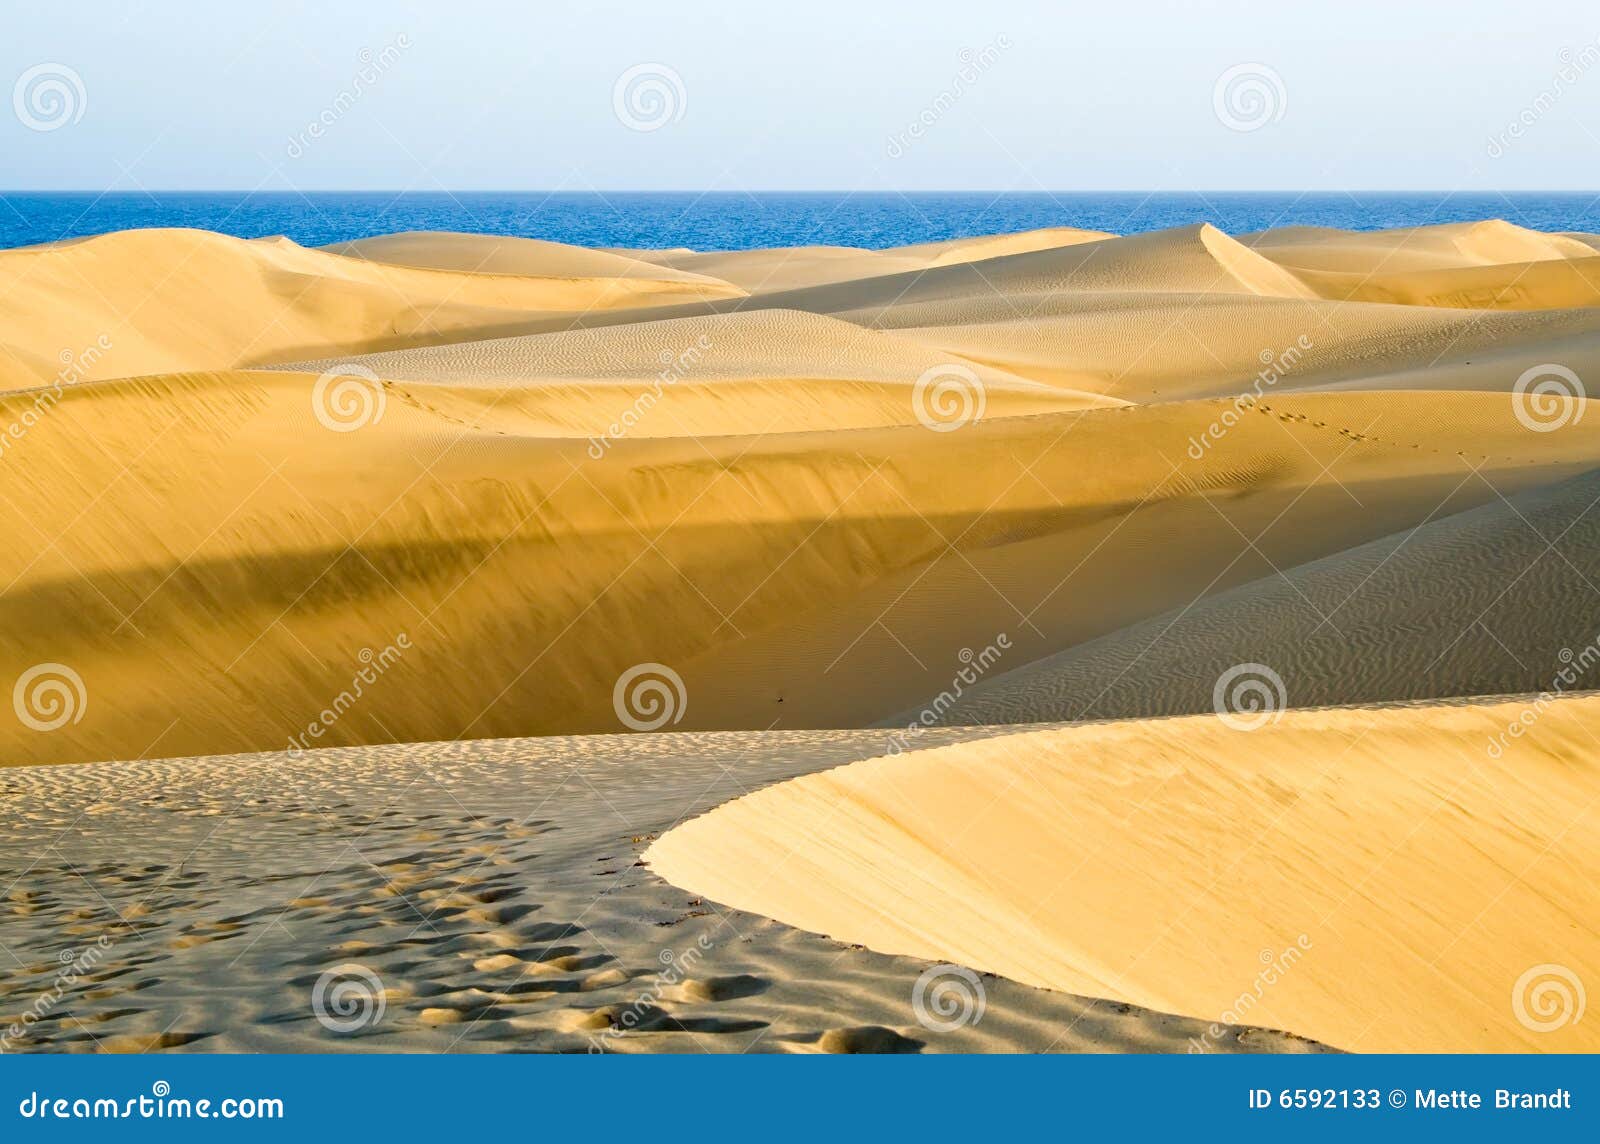 the desert in gran canaria